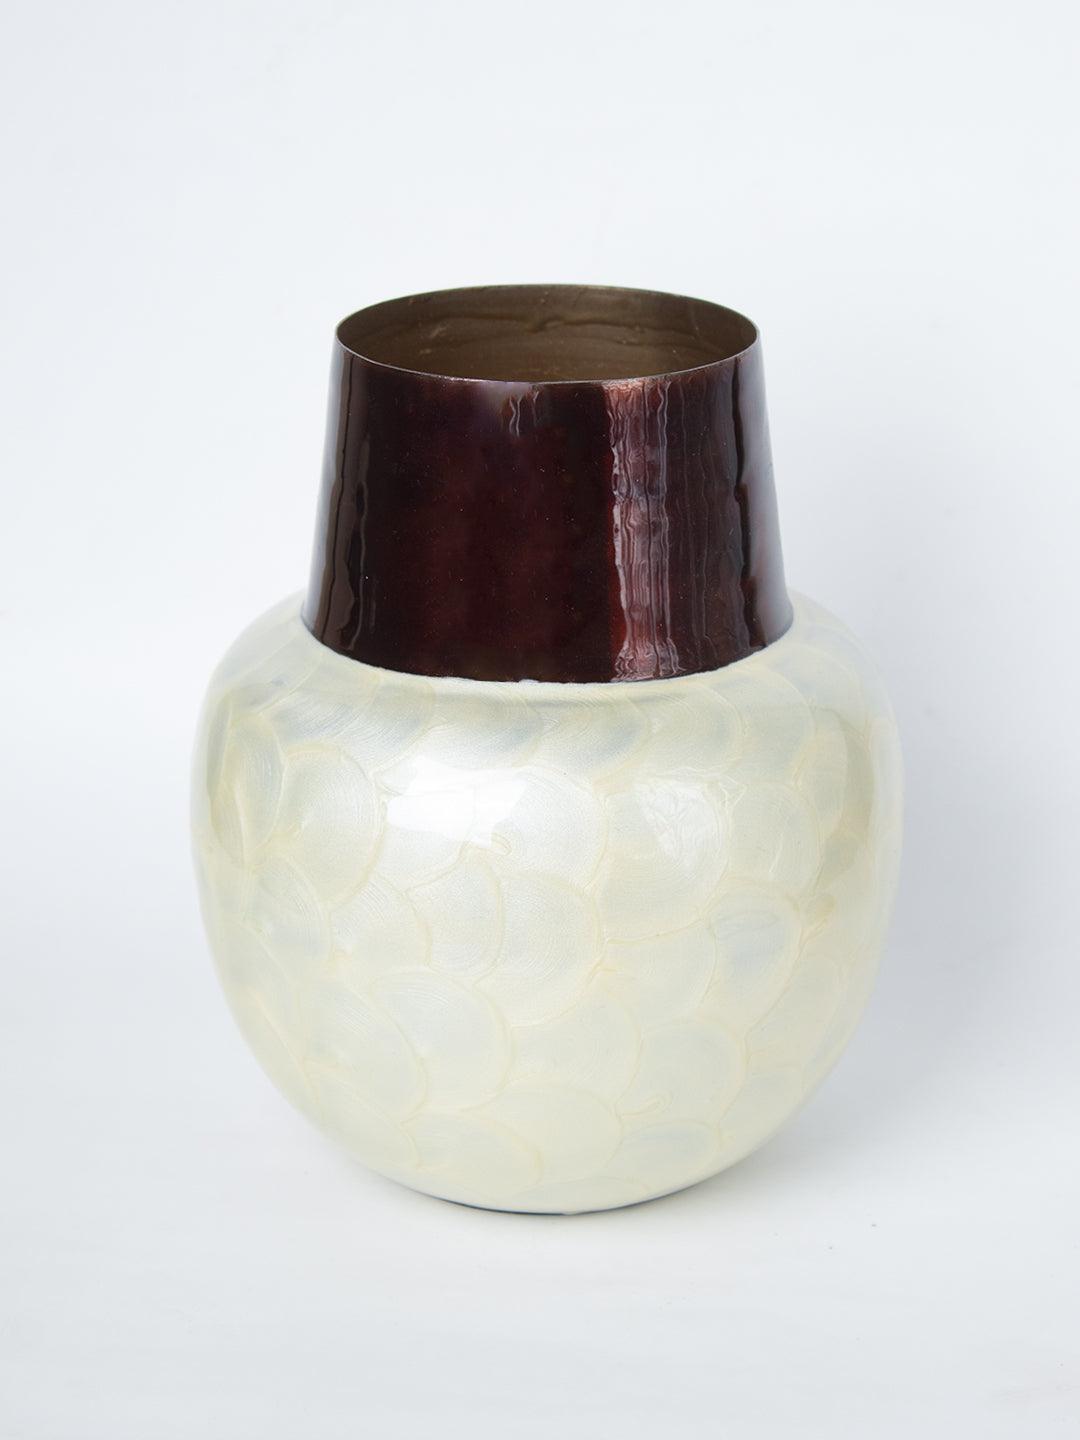 Ivory Globular Shape Pot Vase (Ivory Enamel) - 3